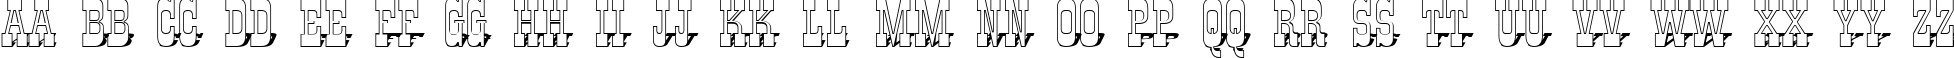 Пример написания английского алфавита шрифтом a_GildiaTitul3DSh